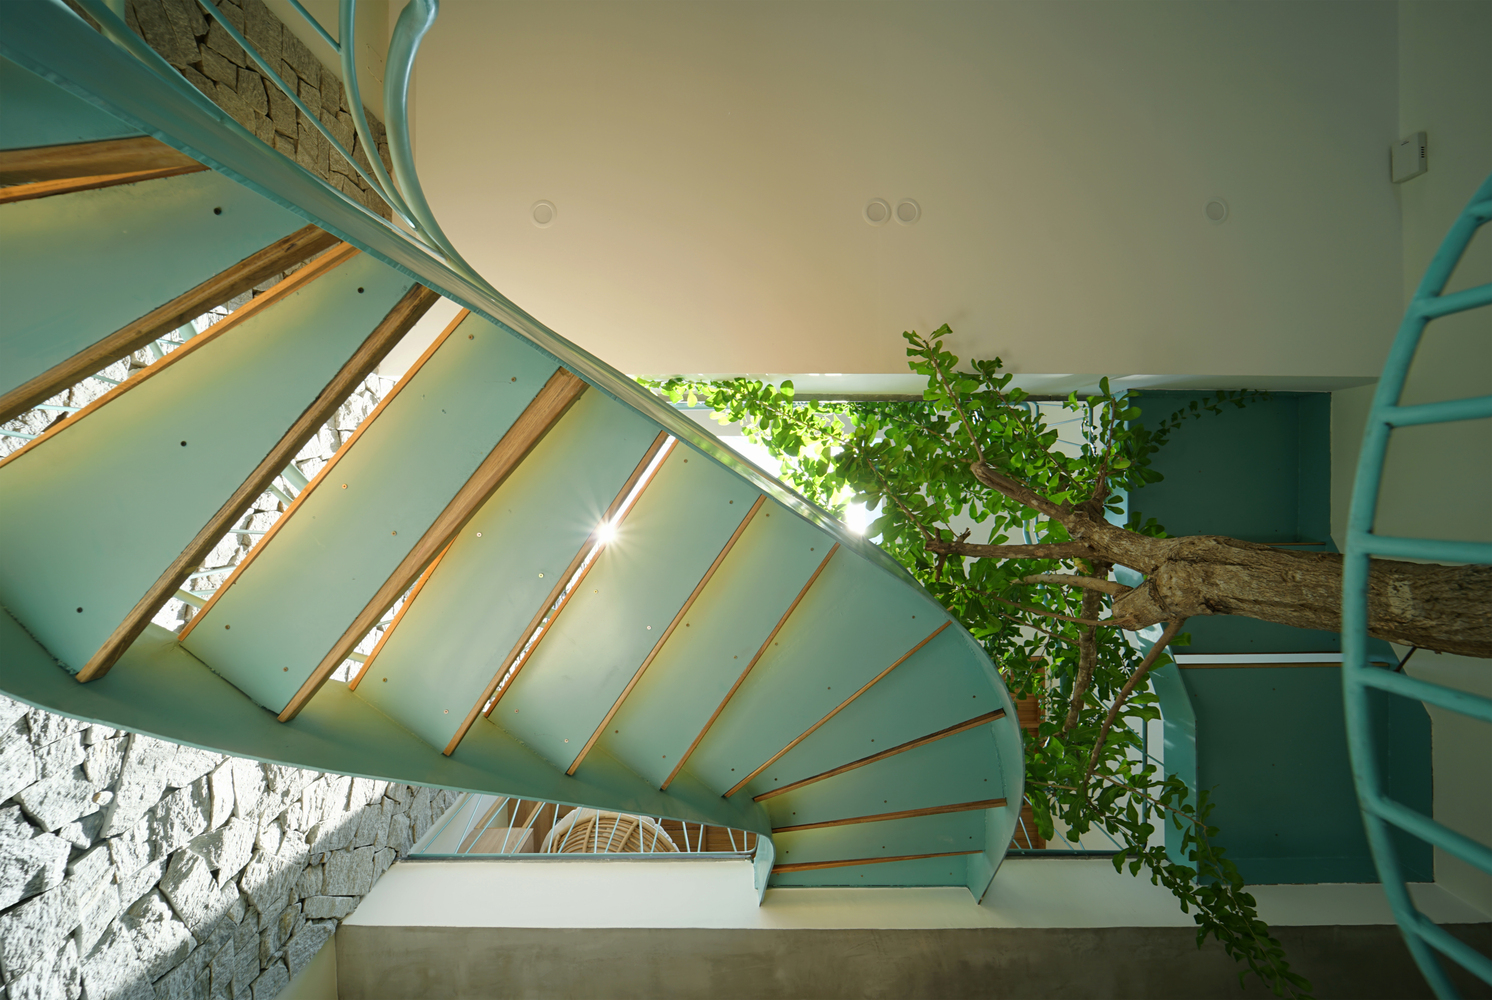 Hoa’ House: Nhà phố Đà Nẵng với bể bơi mát rượi cùng cầu thang sắc xanh bạc hà làm điểm nhấn - Ảnh 10